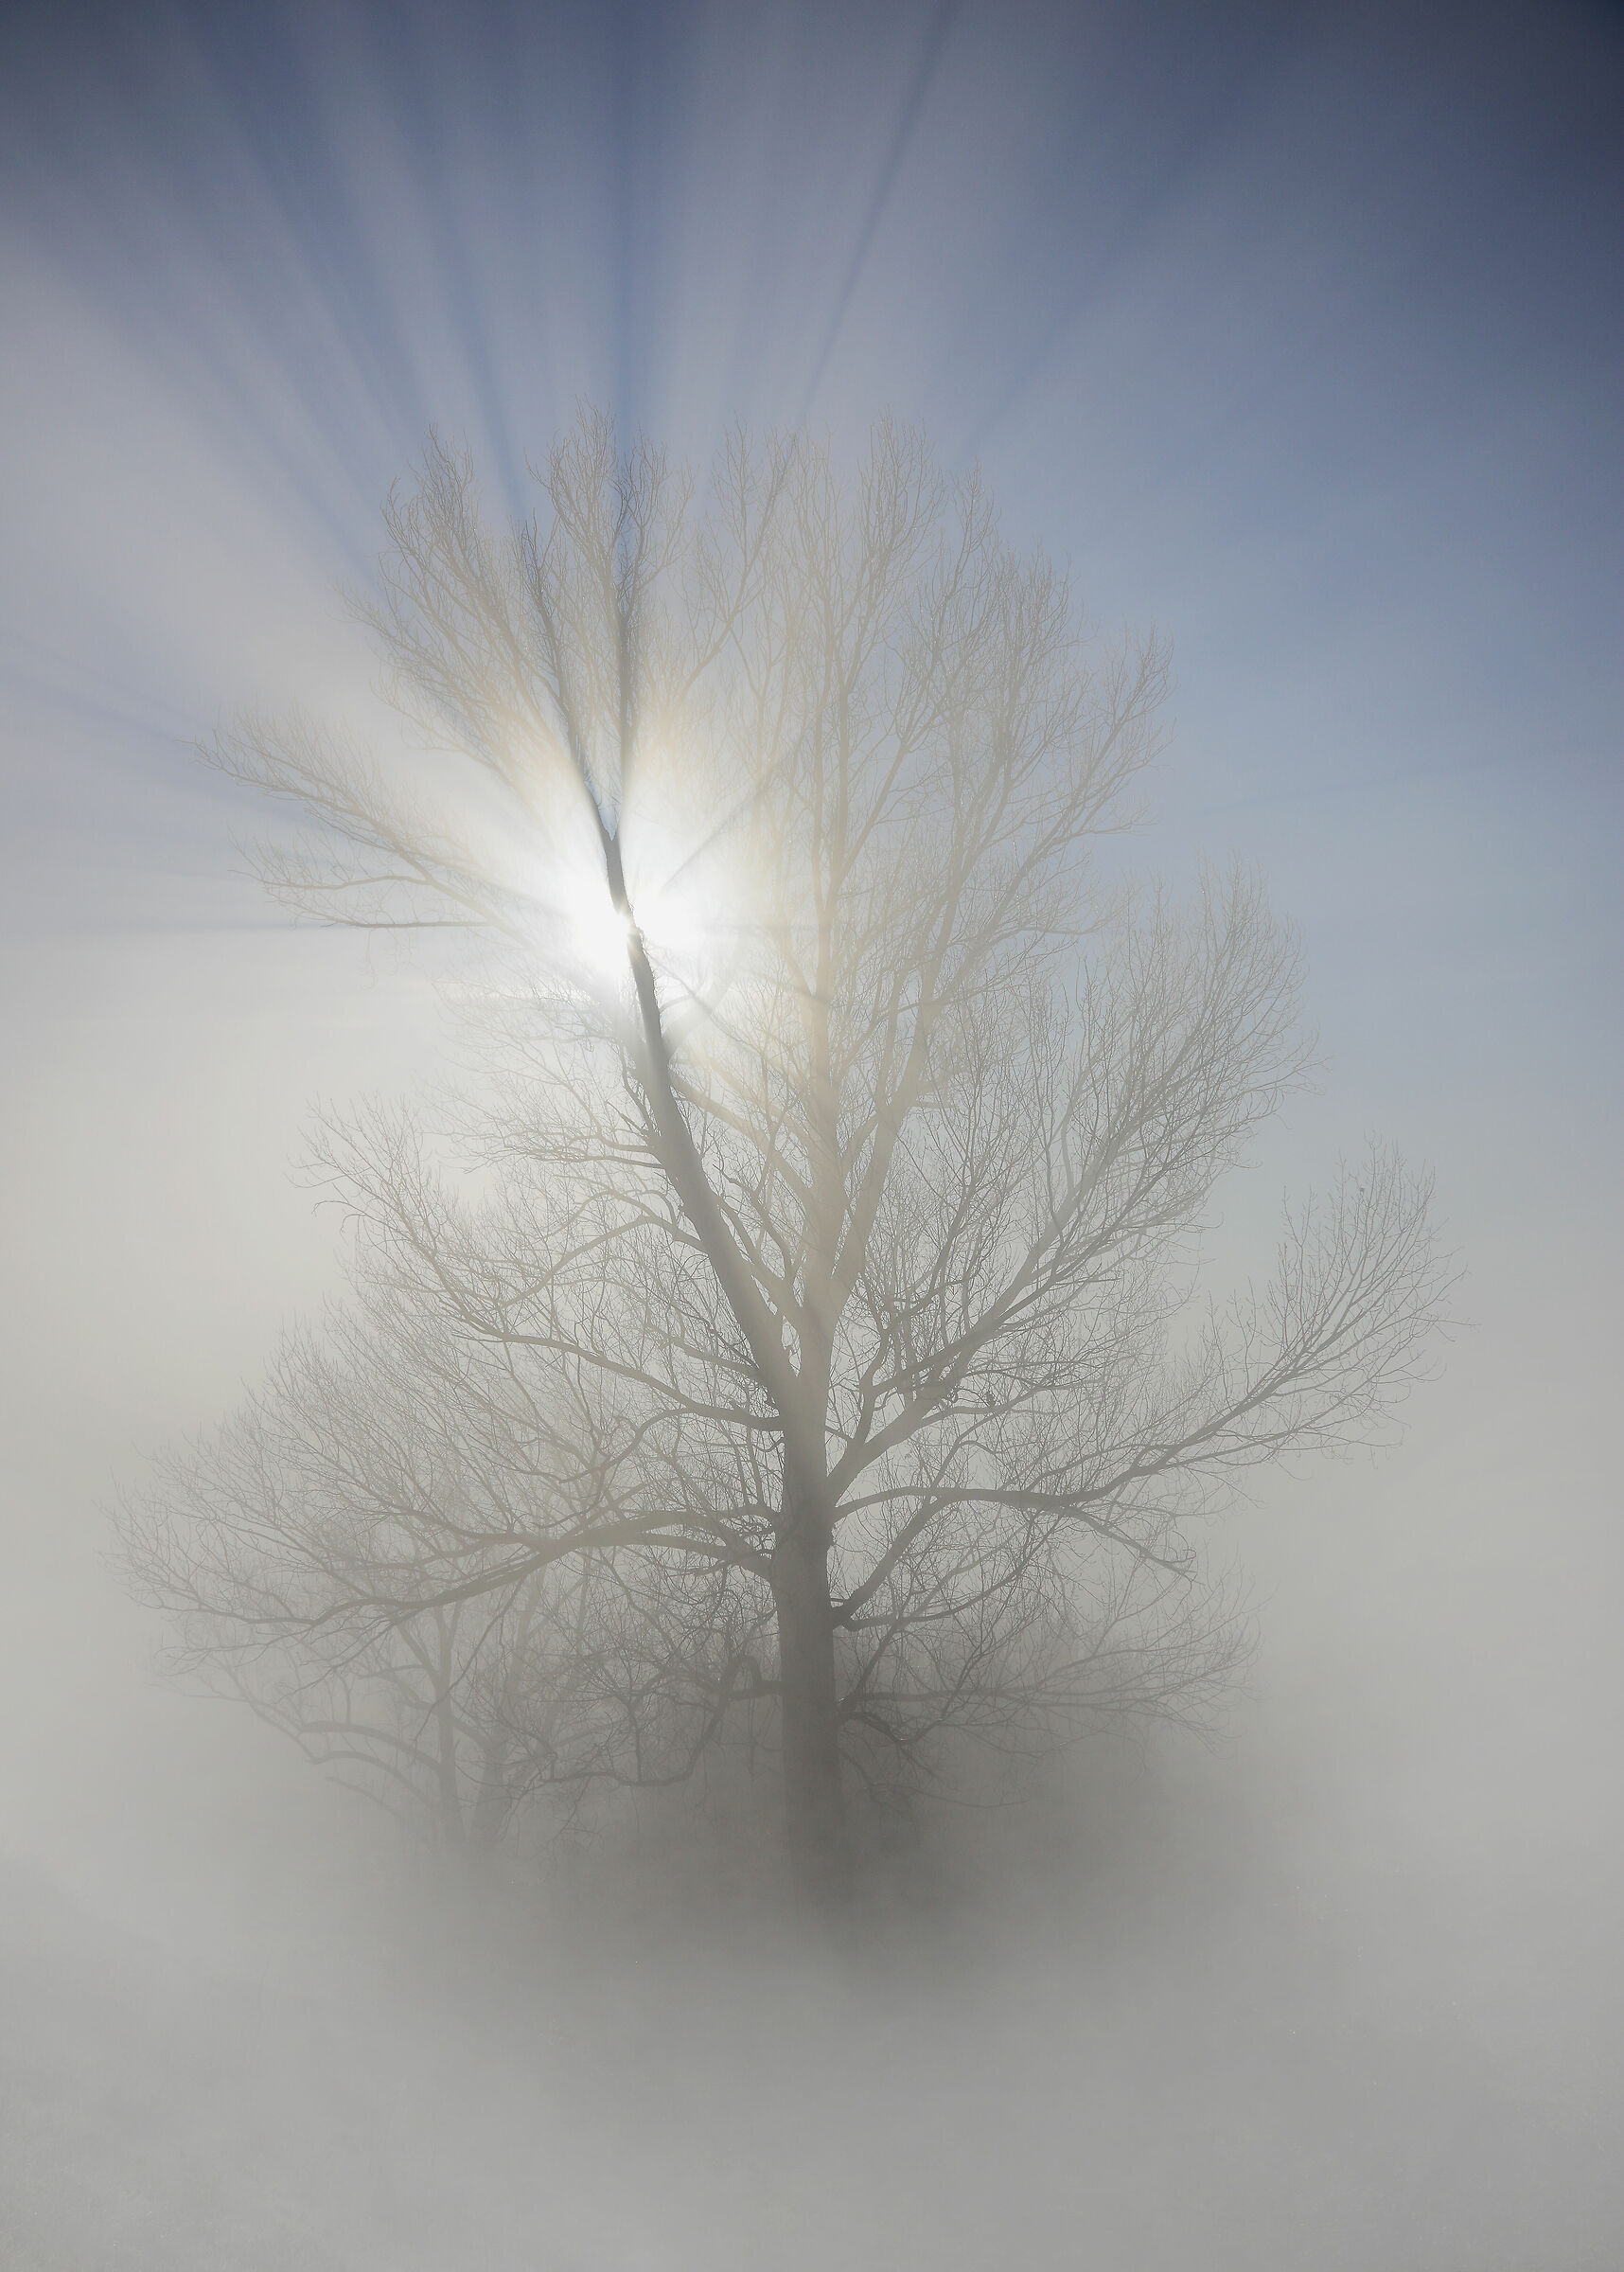 Light in the fog...